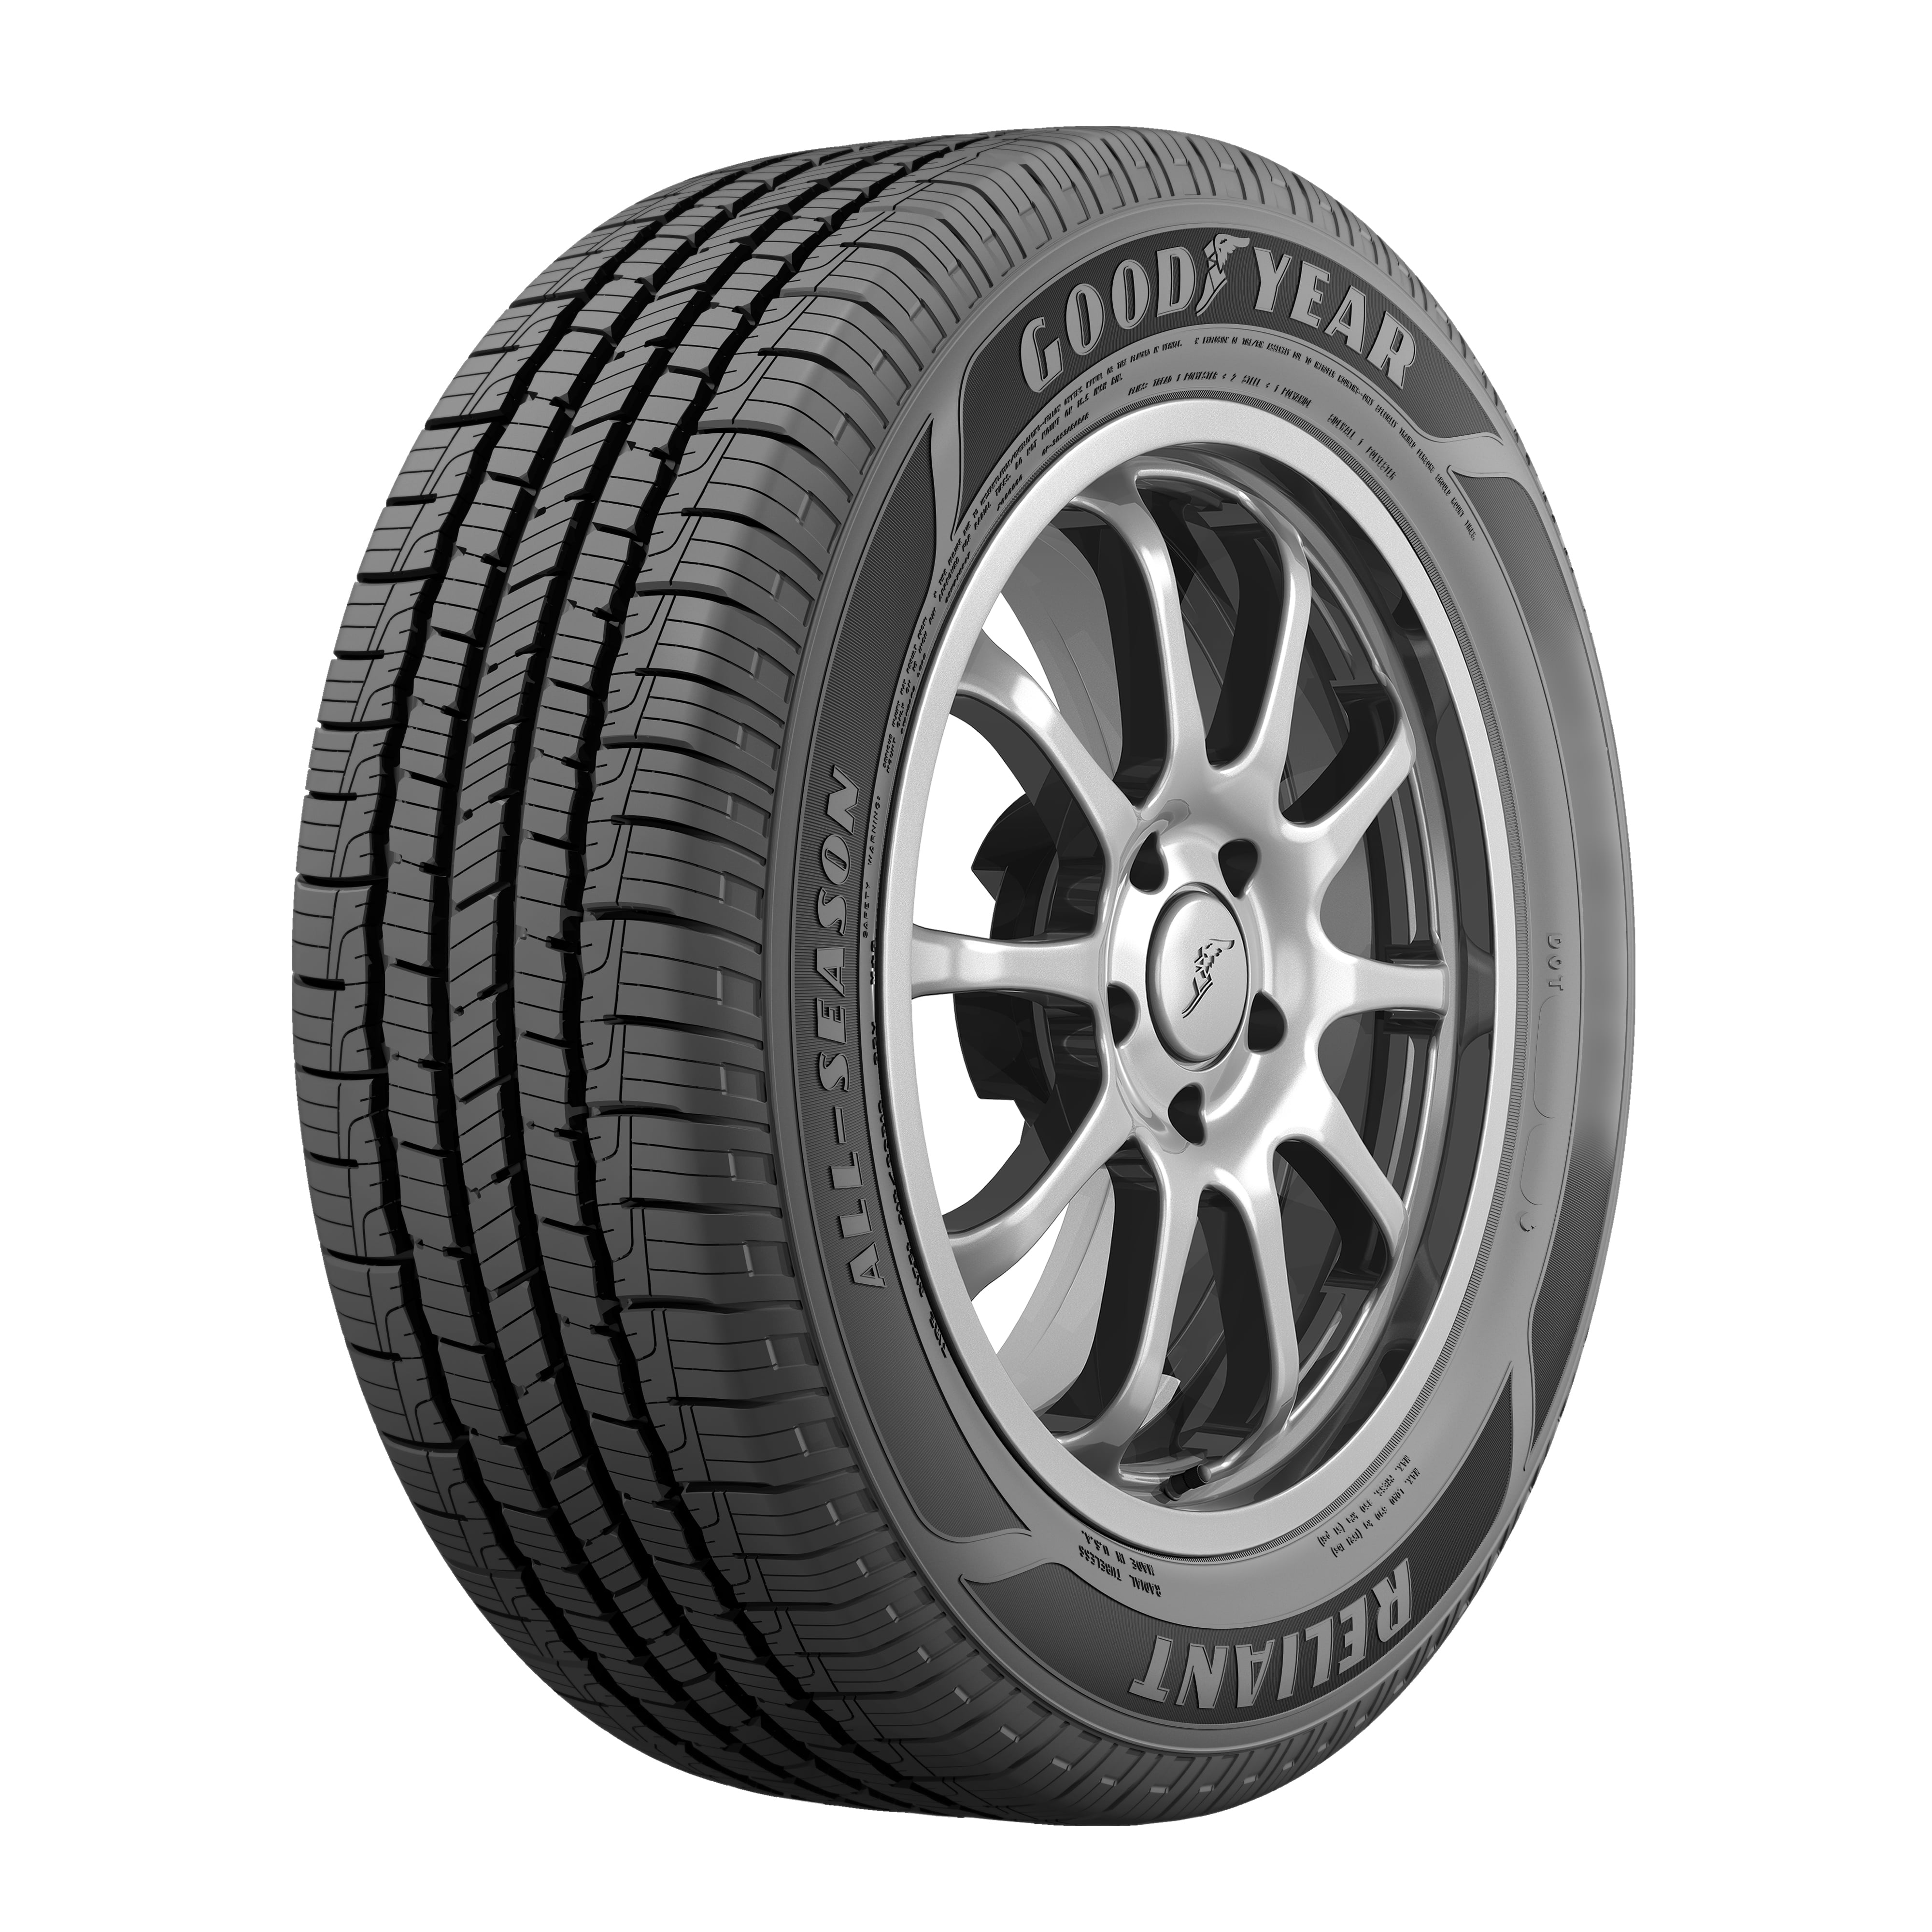 All Verde SUV/Crossover Season 235/60R18 All Season 103H Tire Scorpion Pirelli